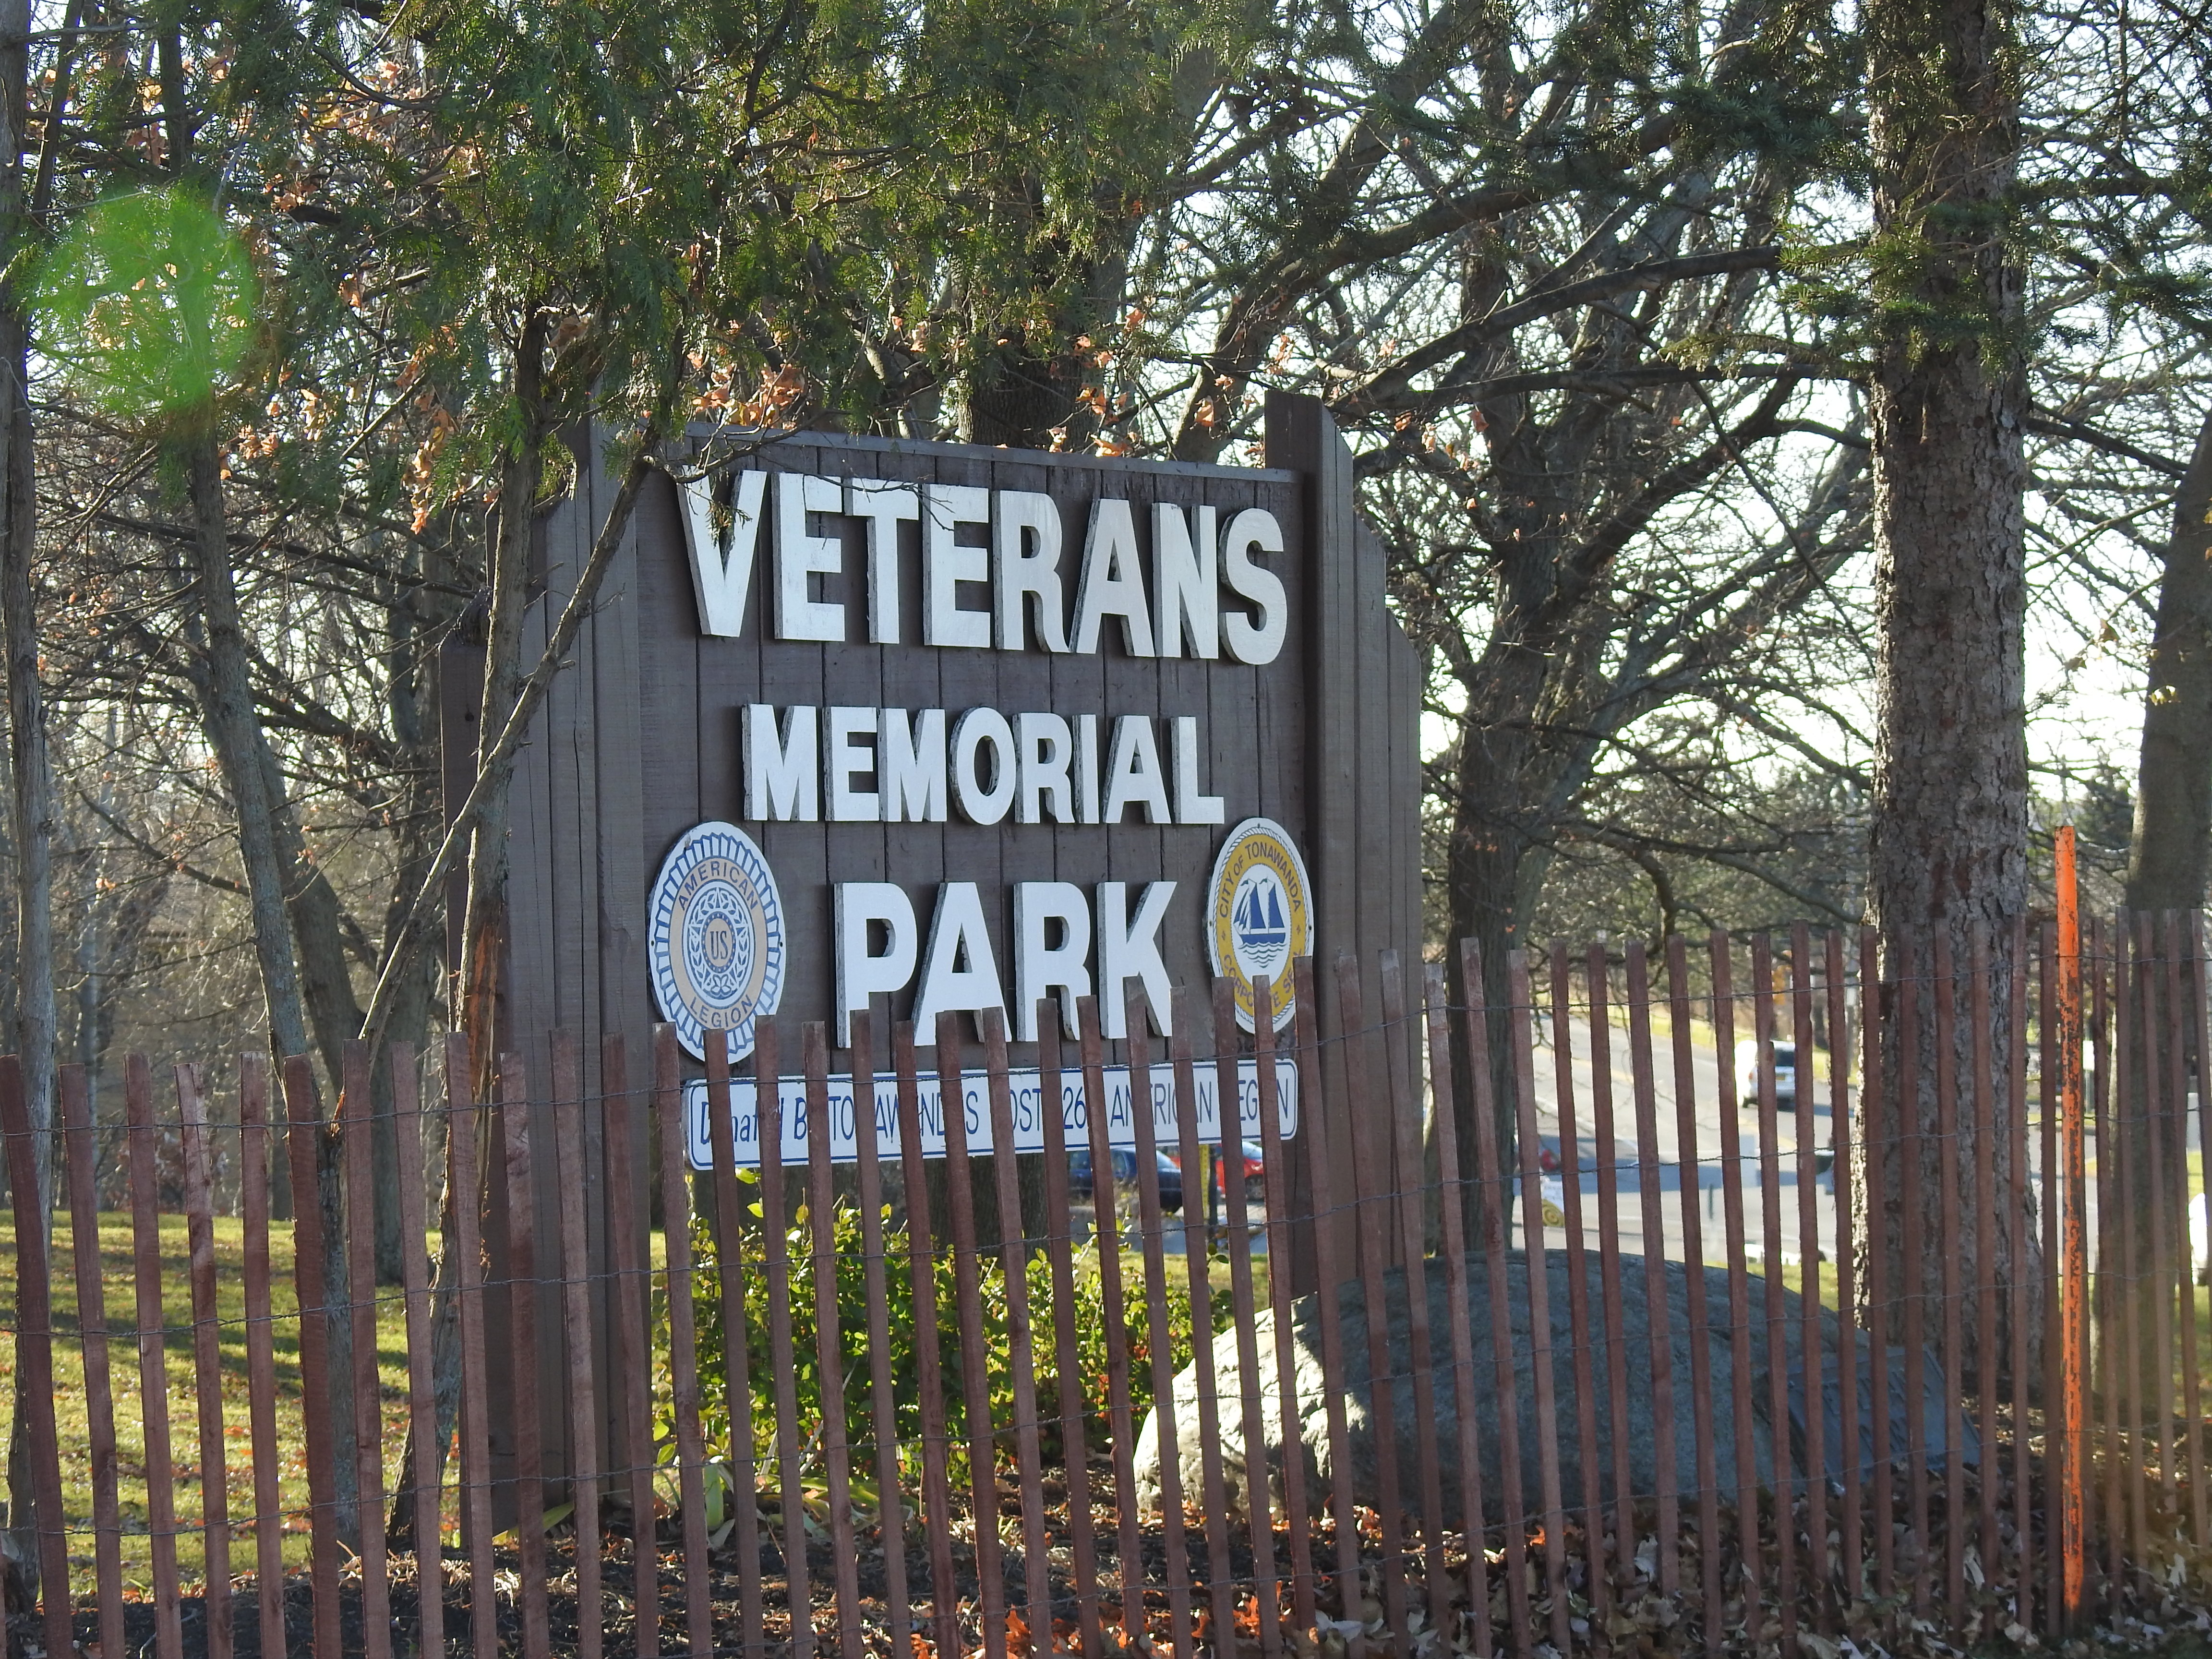 Park sign